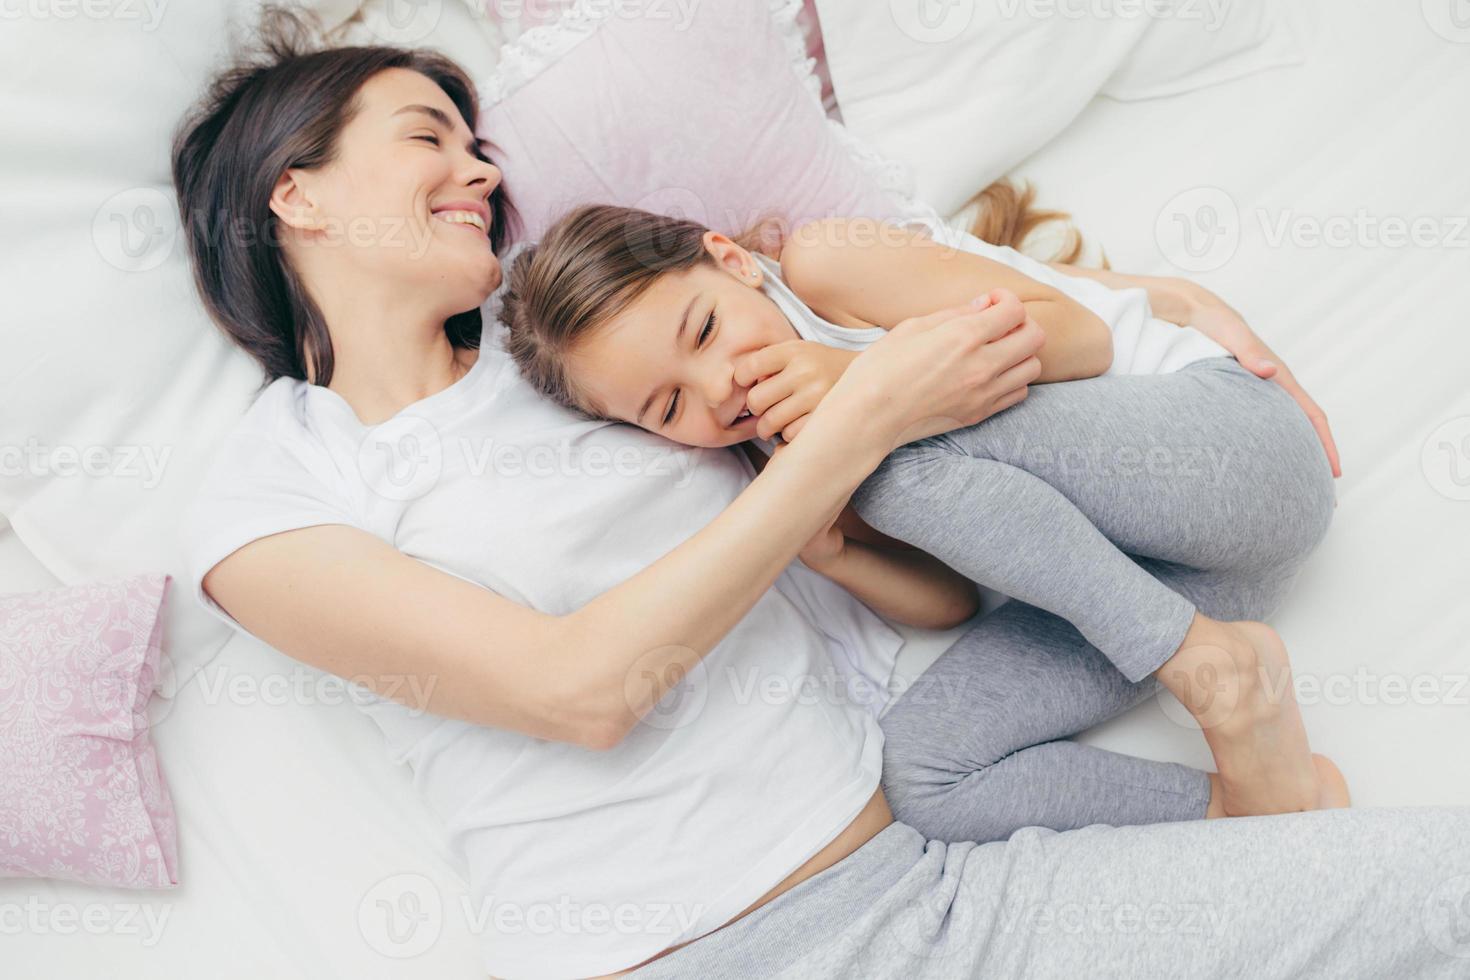 Entzücktes weibliches Kind kichert freudig, während es mit seiner Mutter in einem bequemen Bett spielt, positives Lächeln auf den Gesichtern hat, Schlafanzüge trägt, nach dem Aufwachen gute Laune hat. menschen, freizeit und schlafkonzept foto